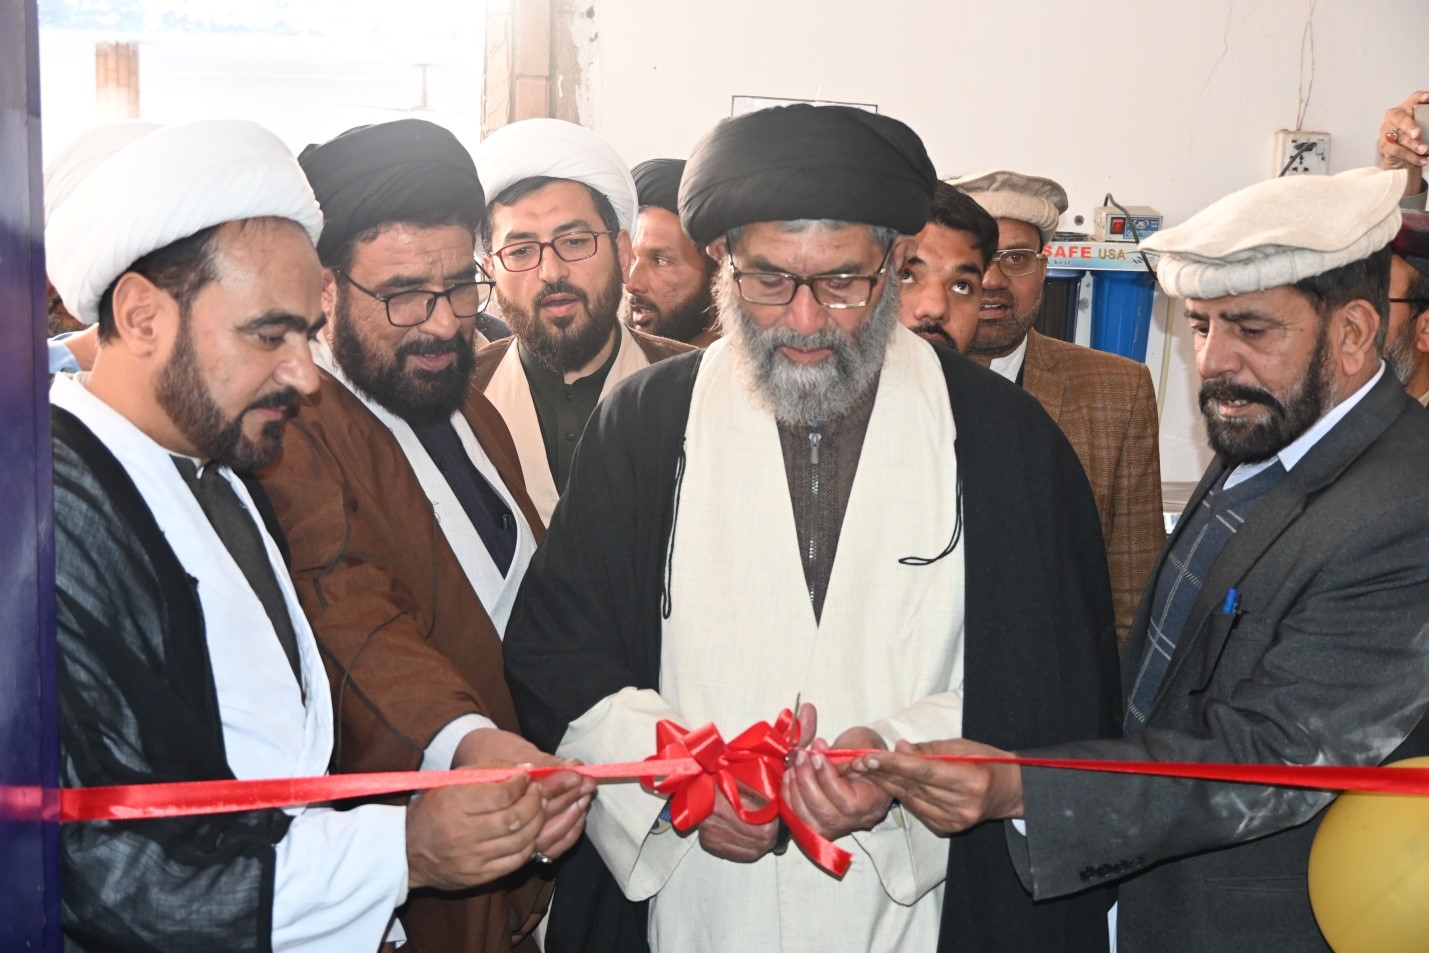 افتتاح کتابخانه دیجیتال در مدارس پیوسته جامعة المصطفی العالمیة در پاکستان